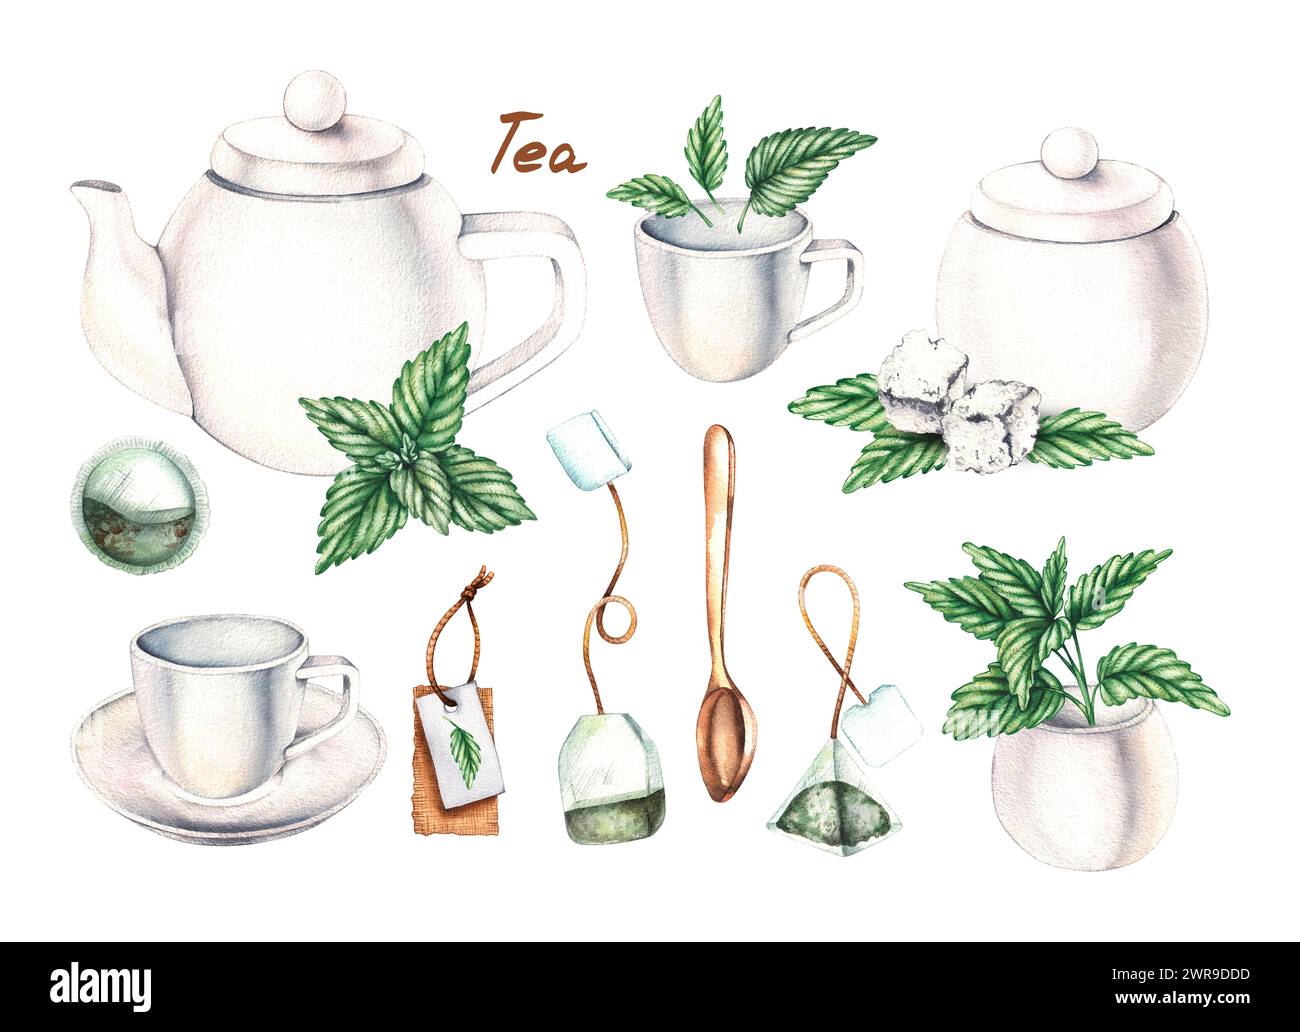 Weißes Teeset mit Wasserfarben, Teebeutel, Zucker und Minze isoliert auf weiß. Tee-Set für die Gestaltung von Verpackungen, Etiketten, Lebensmitteln usw. Stockfoto